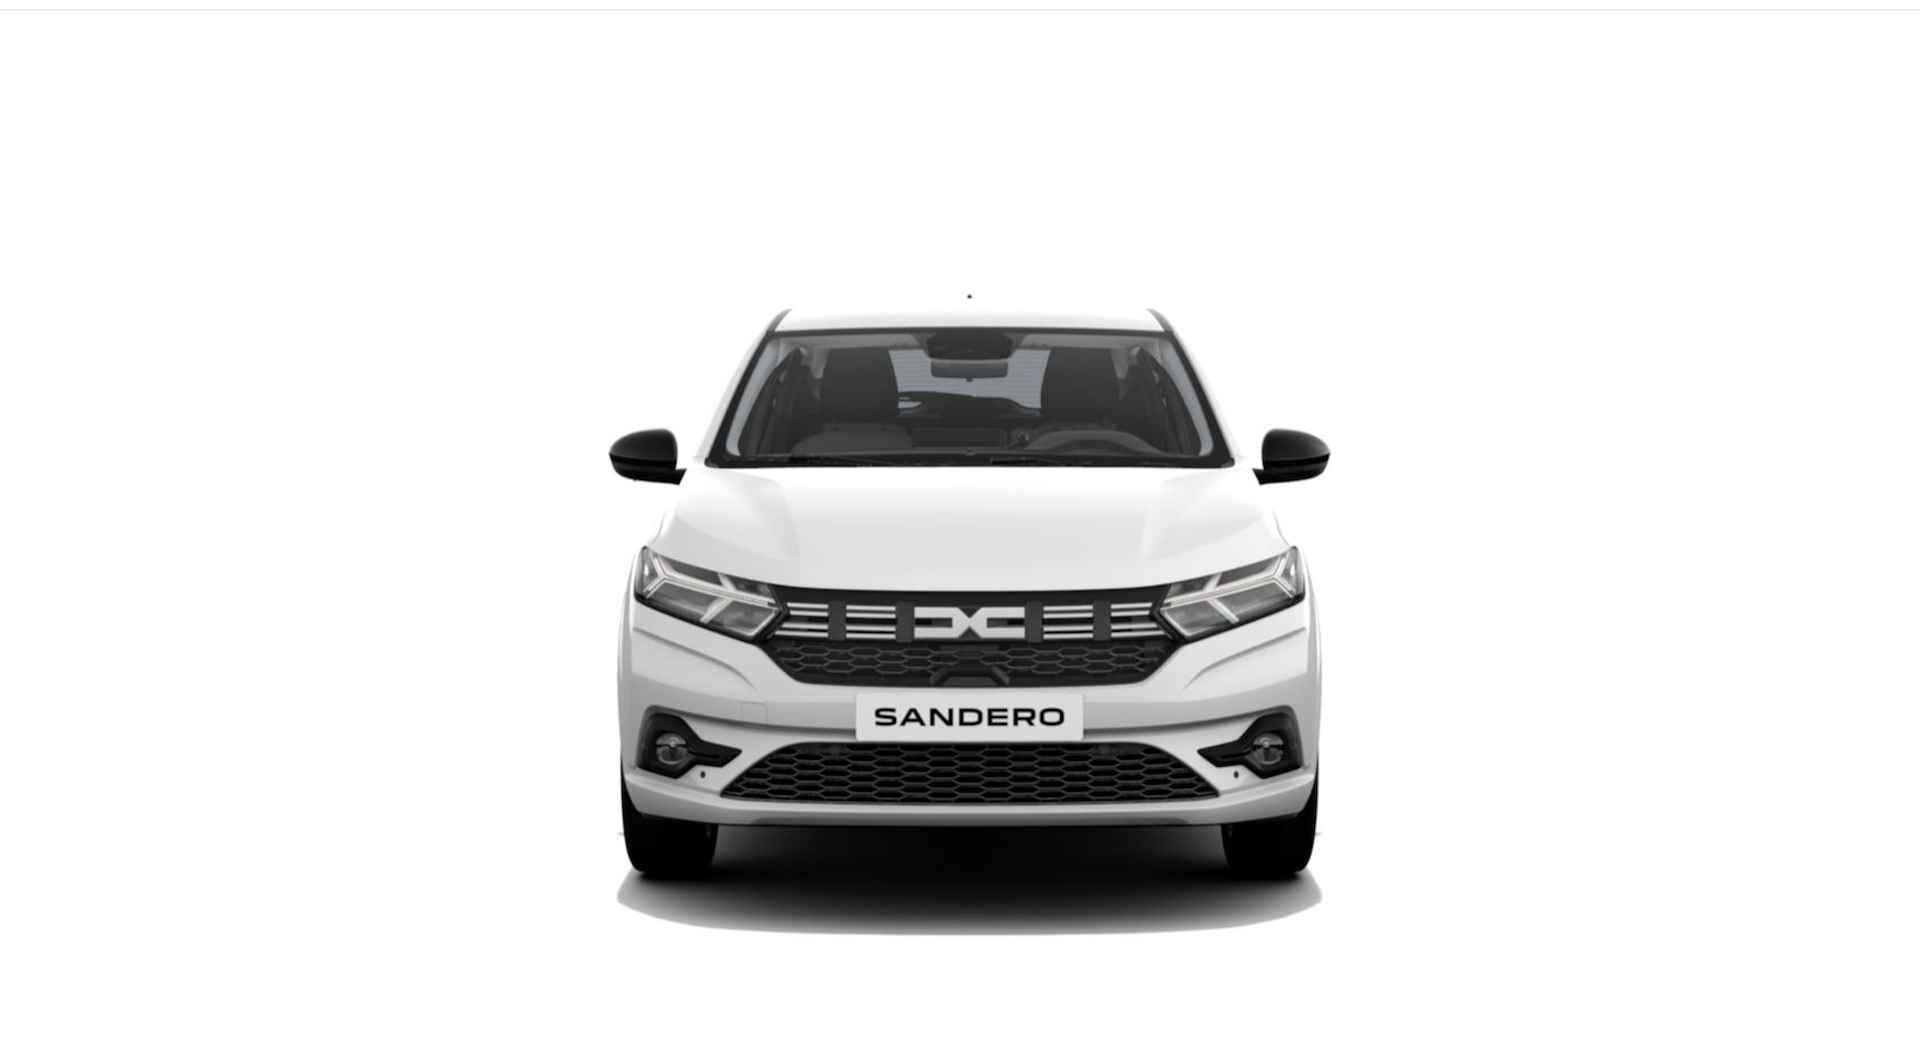 Dacia Sandero 1.0 TCe 100 ECO-G Journey | NU met standaard 5 jaar fabrieksgarantie bij Renault Zeeuw & Zeeuw Delft! | - 8/13